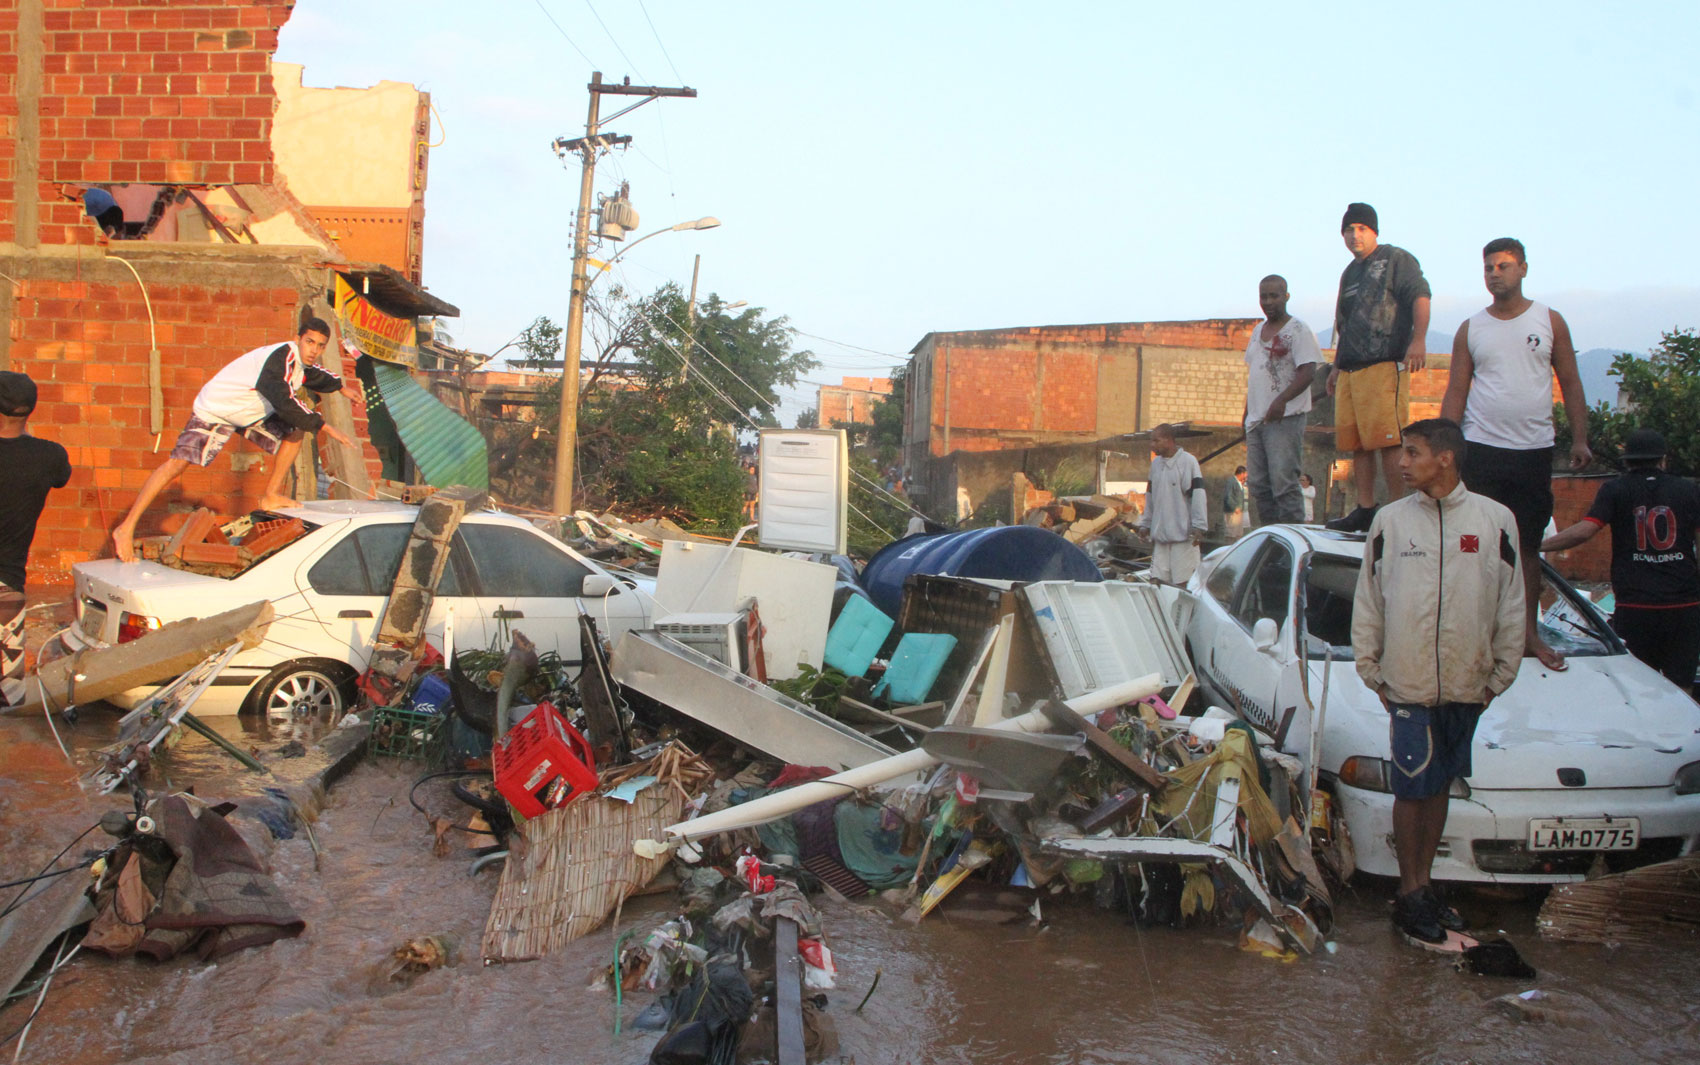 Casas e carros foram destruídos na madrugada desta terça-feira, atingidos por milhões de litros de água que jorraram da tubulação rompida